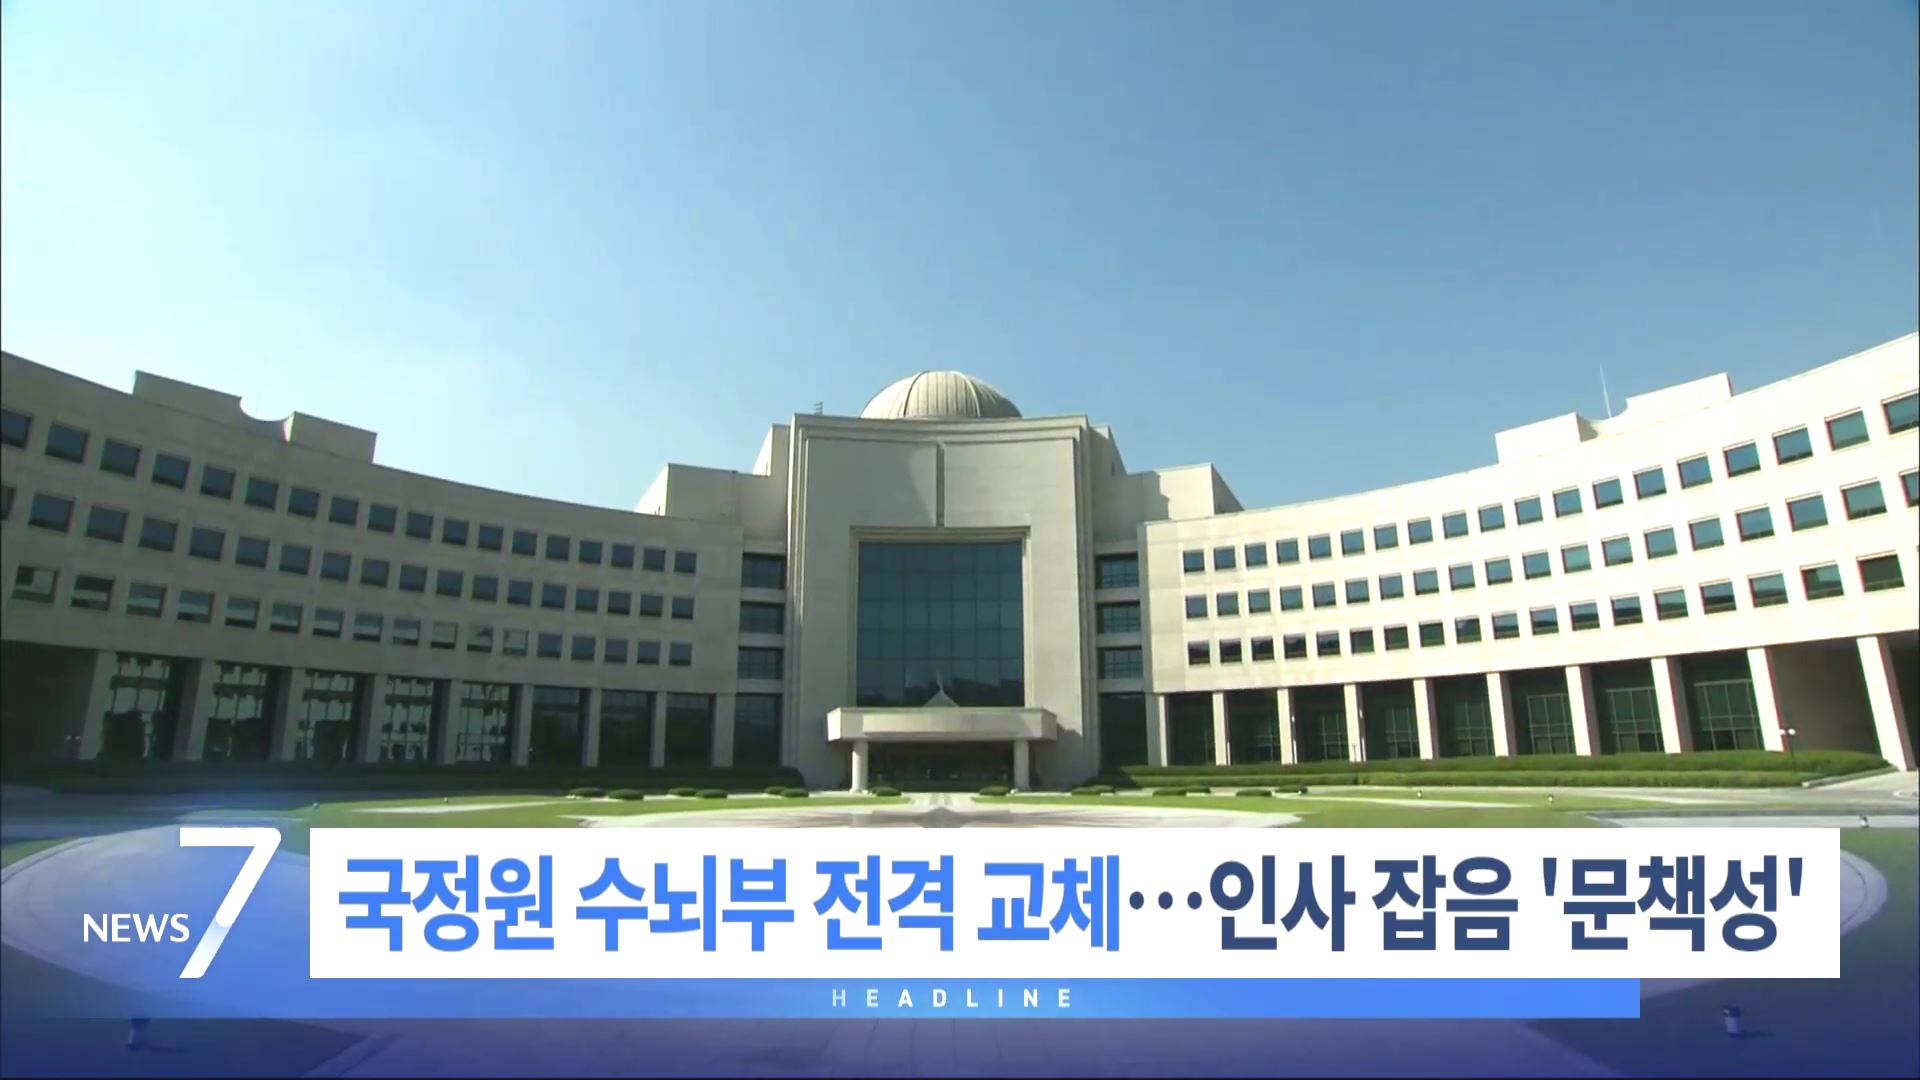 11월 26일 '뉴스 7' 헤드라인